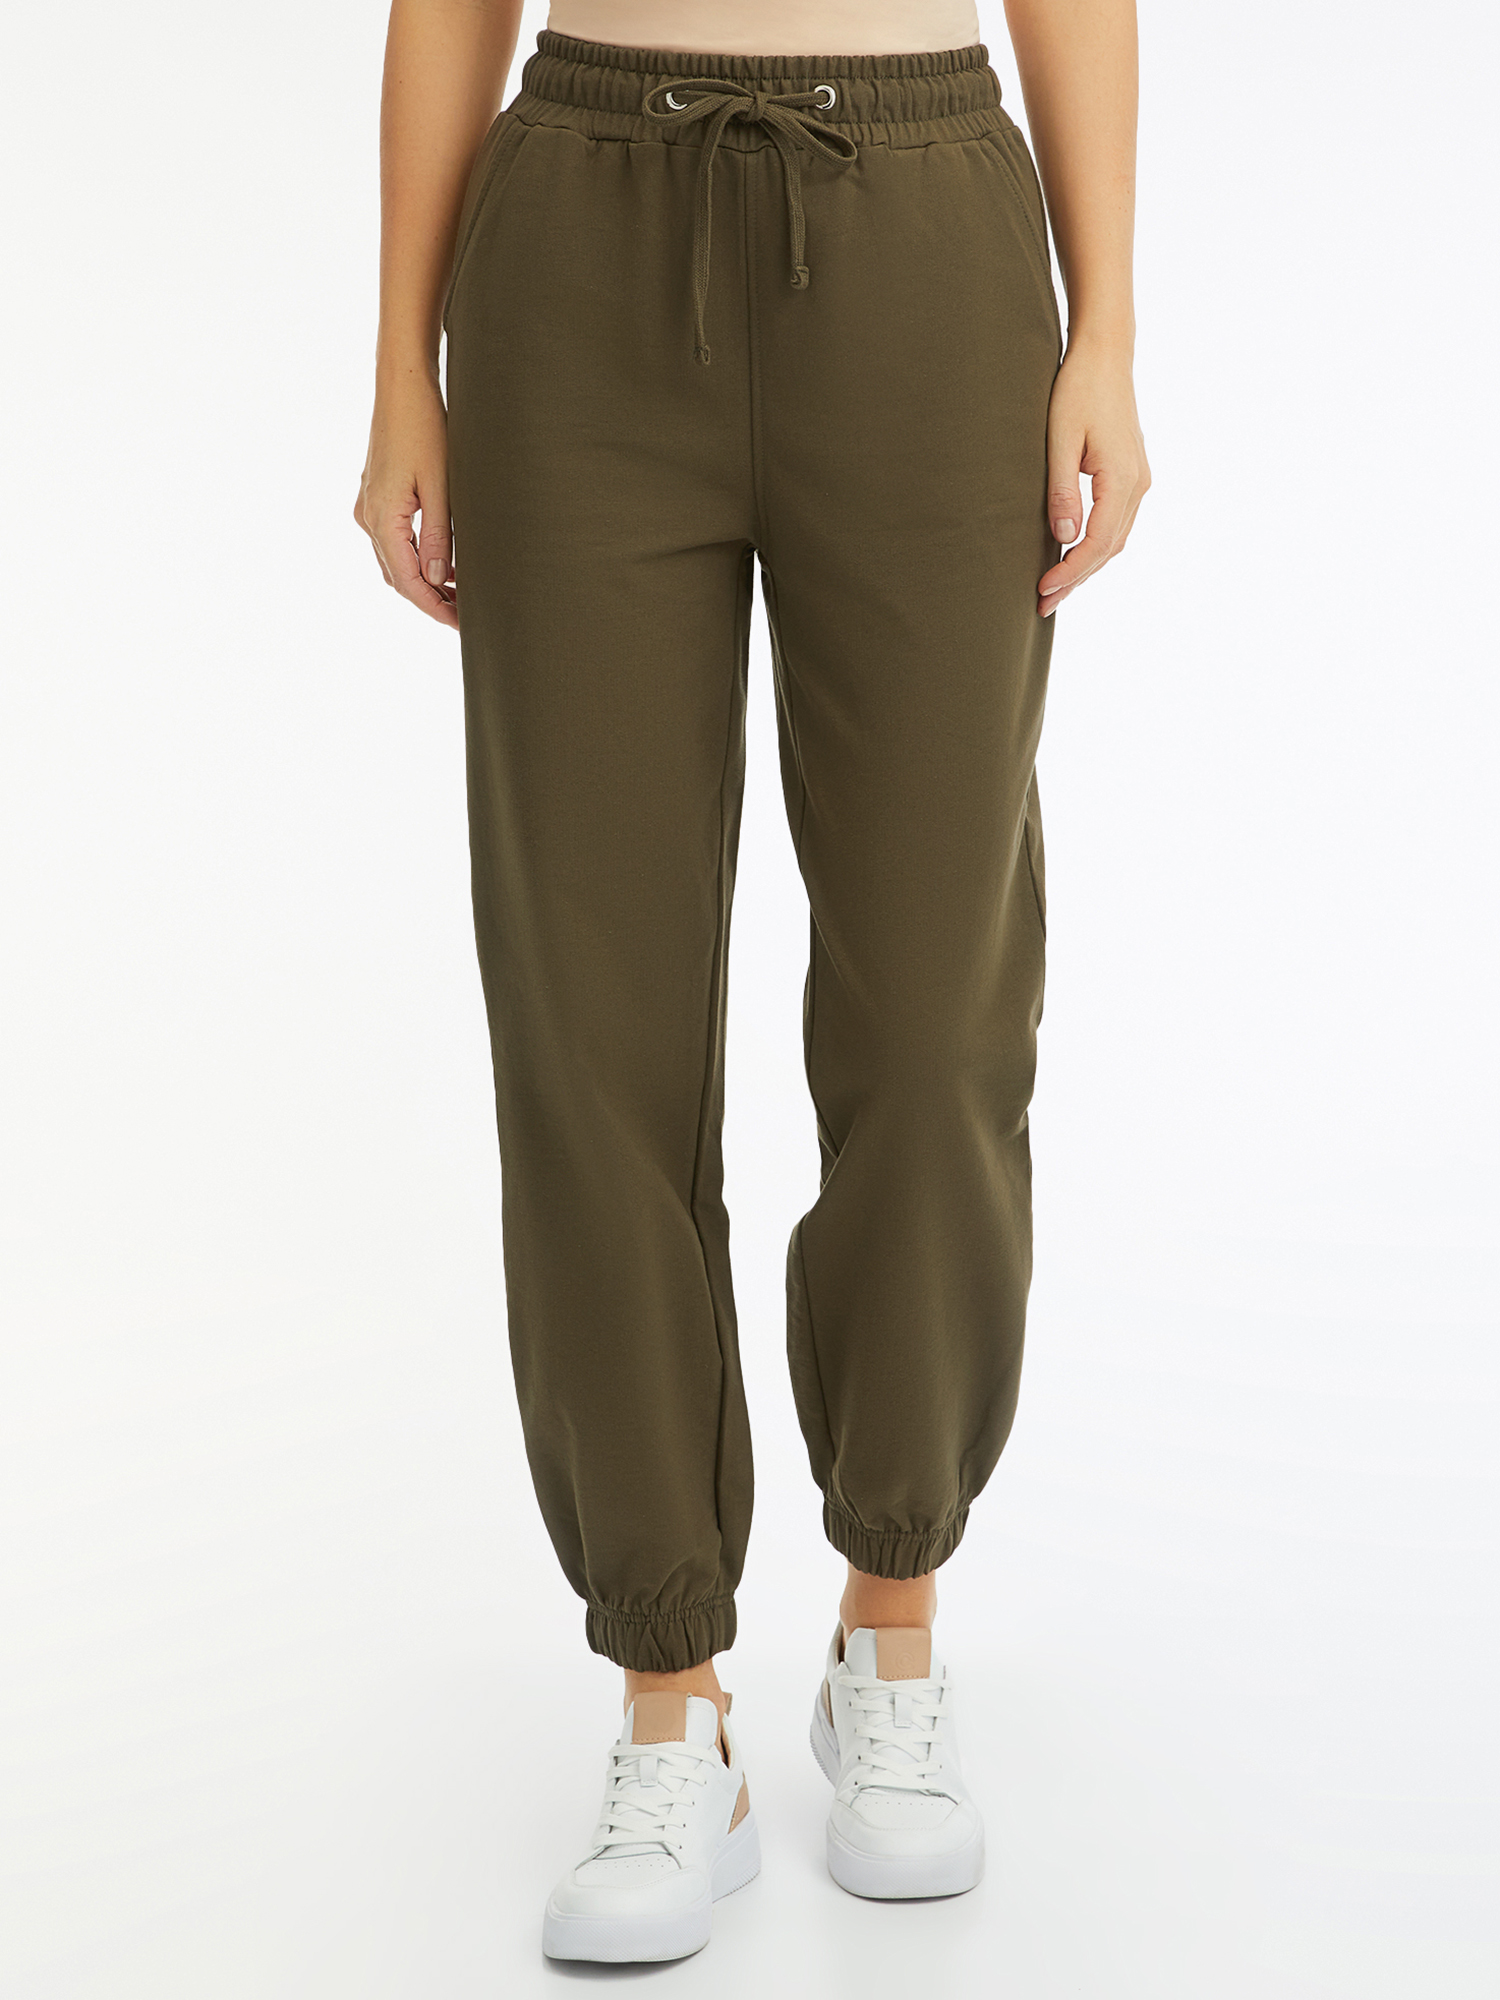 Спортивные брюки женские oodji 16701086-3 зеленые M